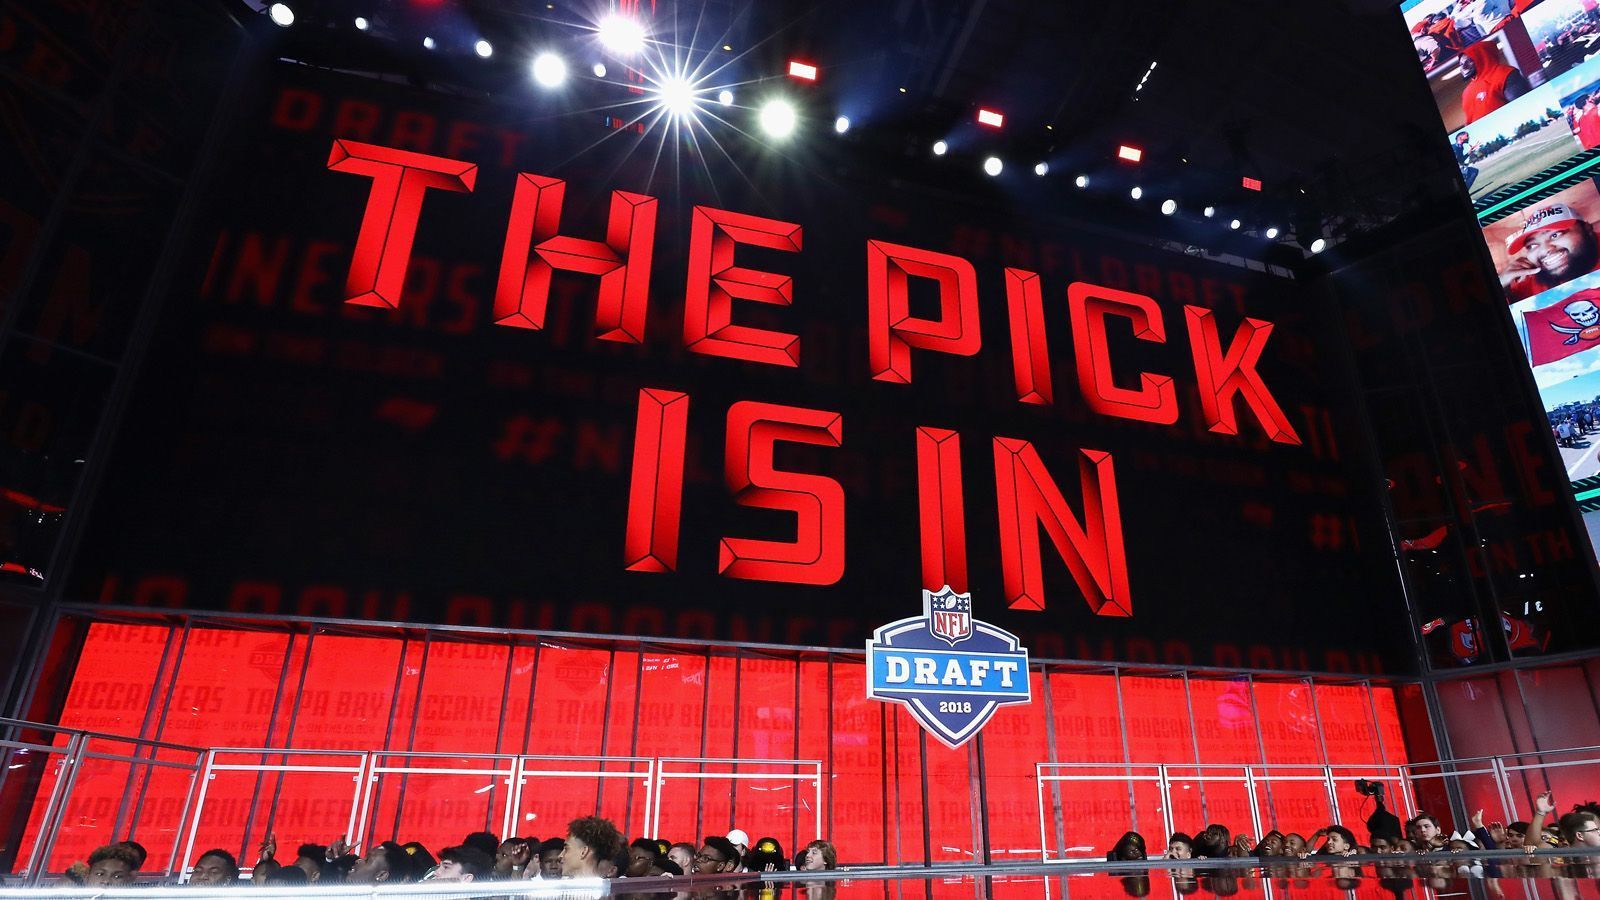 
                <strong>Draft Picks in Nashville</strong><br>
                Der NFL-Draft 2019 in Nashville, Tennessee rückt näher: Vom 25. bis 27. April draften die Teams die vielversprechendsten Talente der College-Teams. ran.de zeigt, welche 23 Spieler beim Draft vor Ort erwartet werden (in der Nacht vom 25. auf den 26. April ab 1:50 Uhr gibt es die erste Runde des NFL Drafts live auf ProSieben MAXX und ran.de).
              